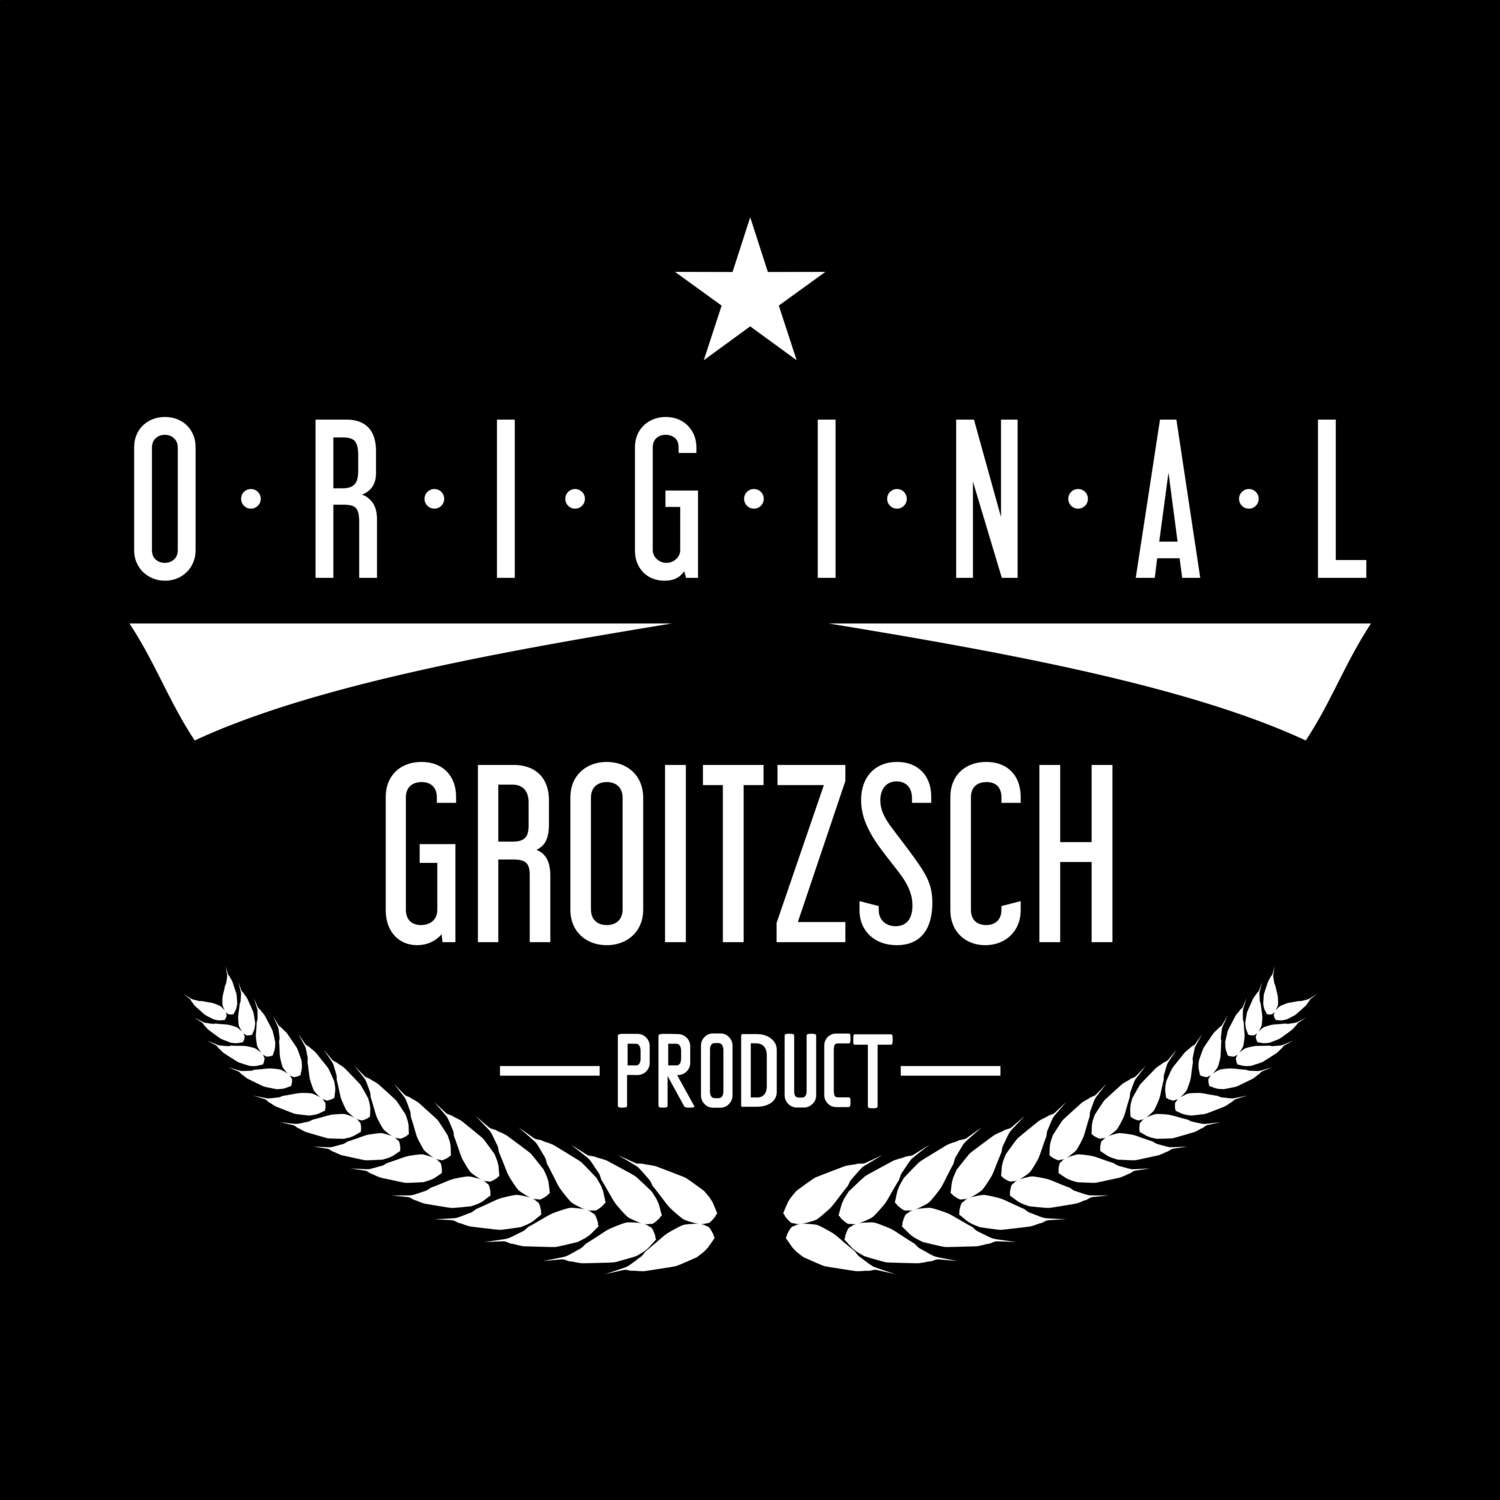 Groitzsch T-Shirt »Original Product«